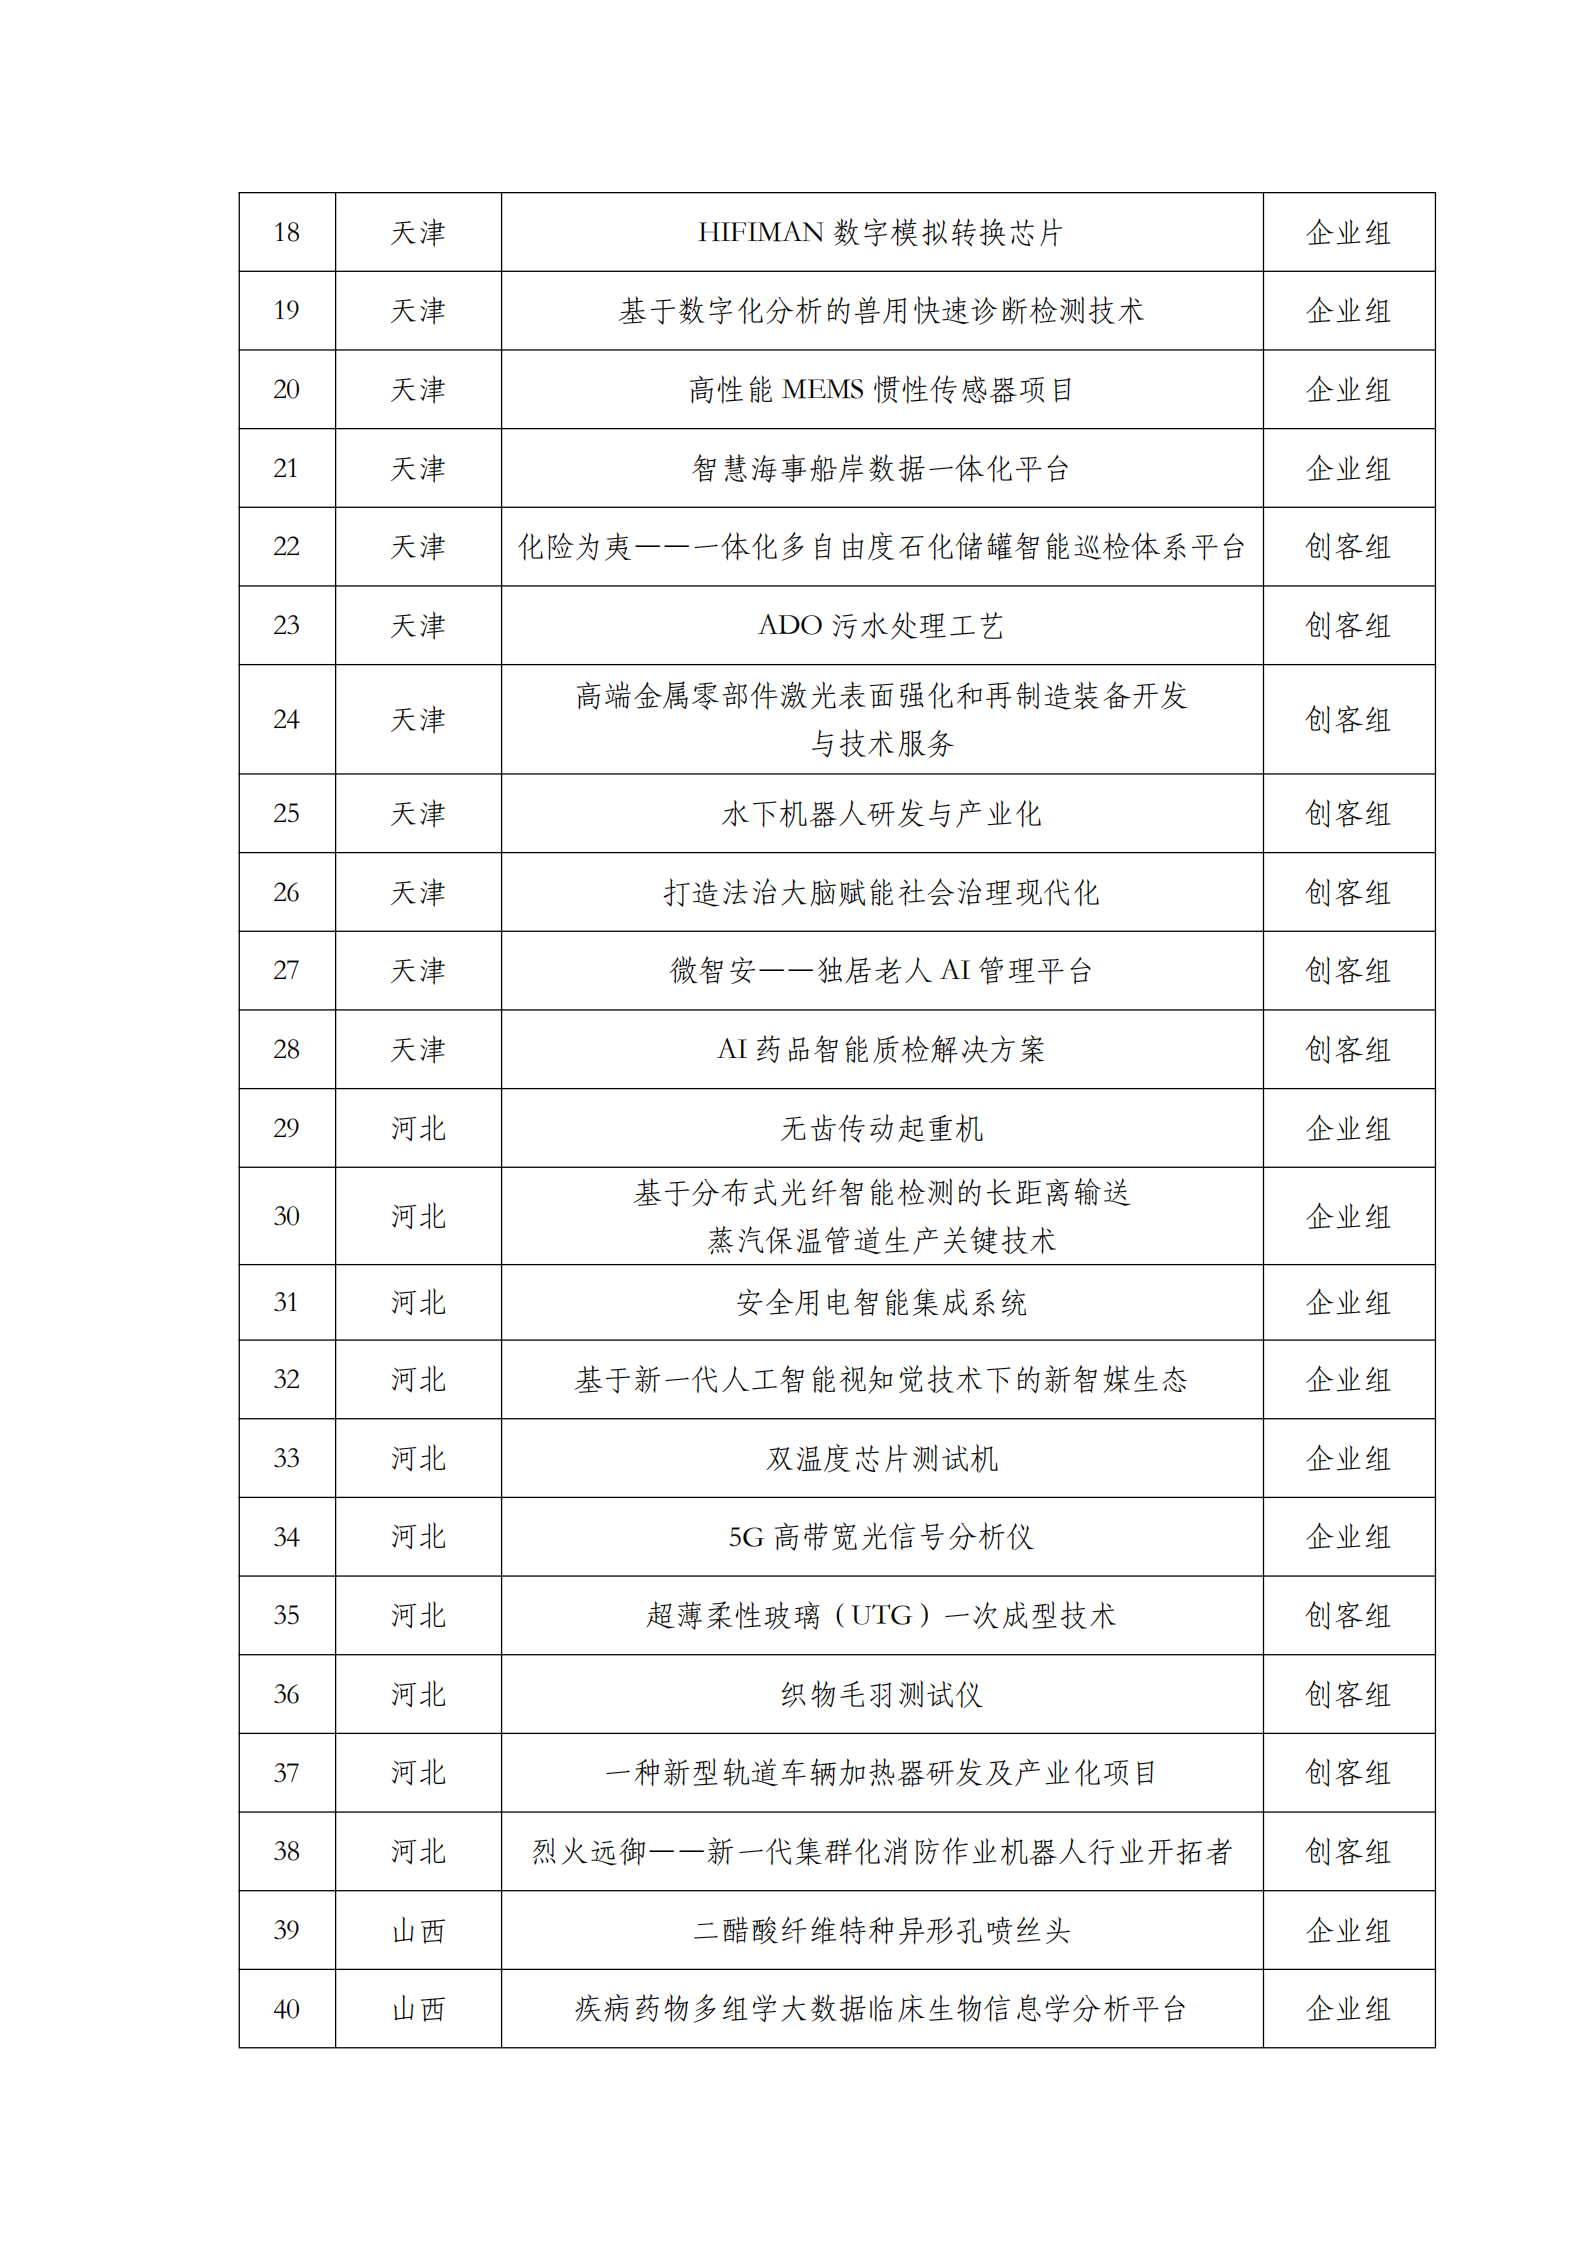 第六届“创客中国”中小企业创新创业大赛500强公示名单_01.png